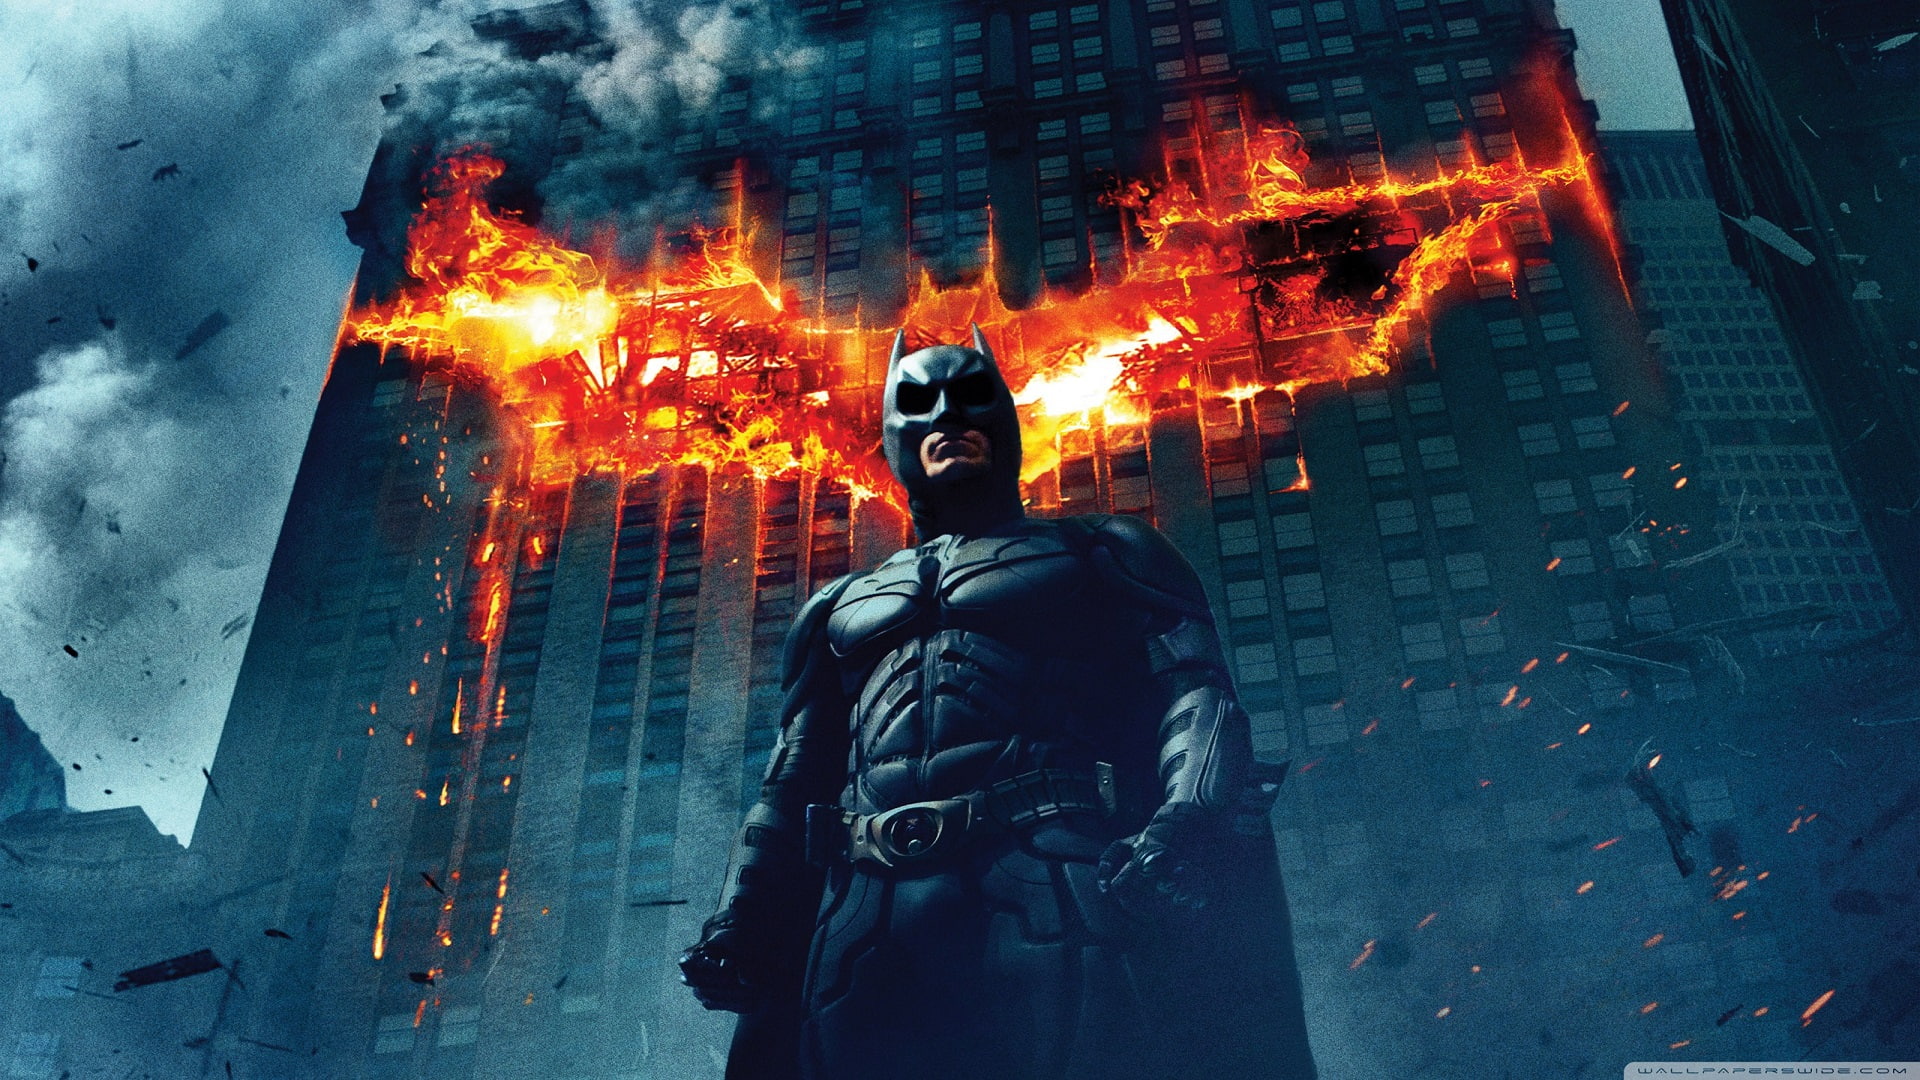 Batman The Dark Knight Rises Fire Building HD, movies